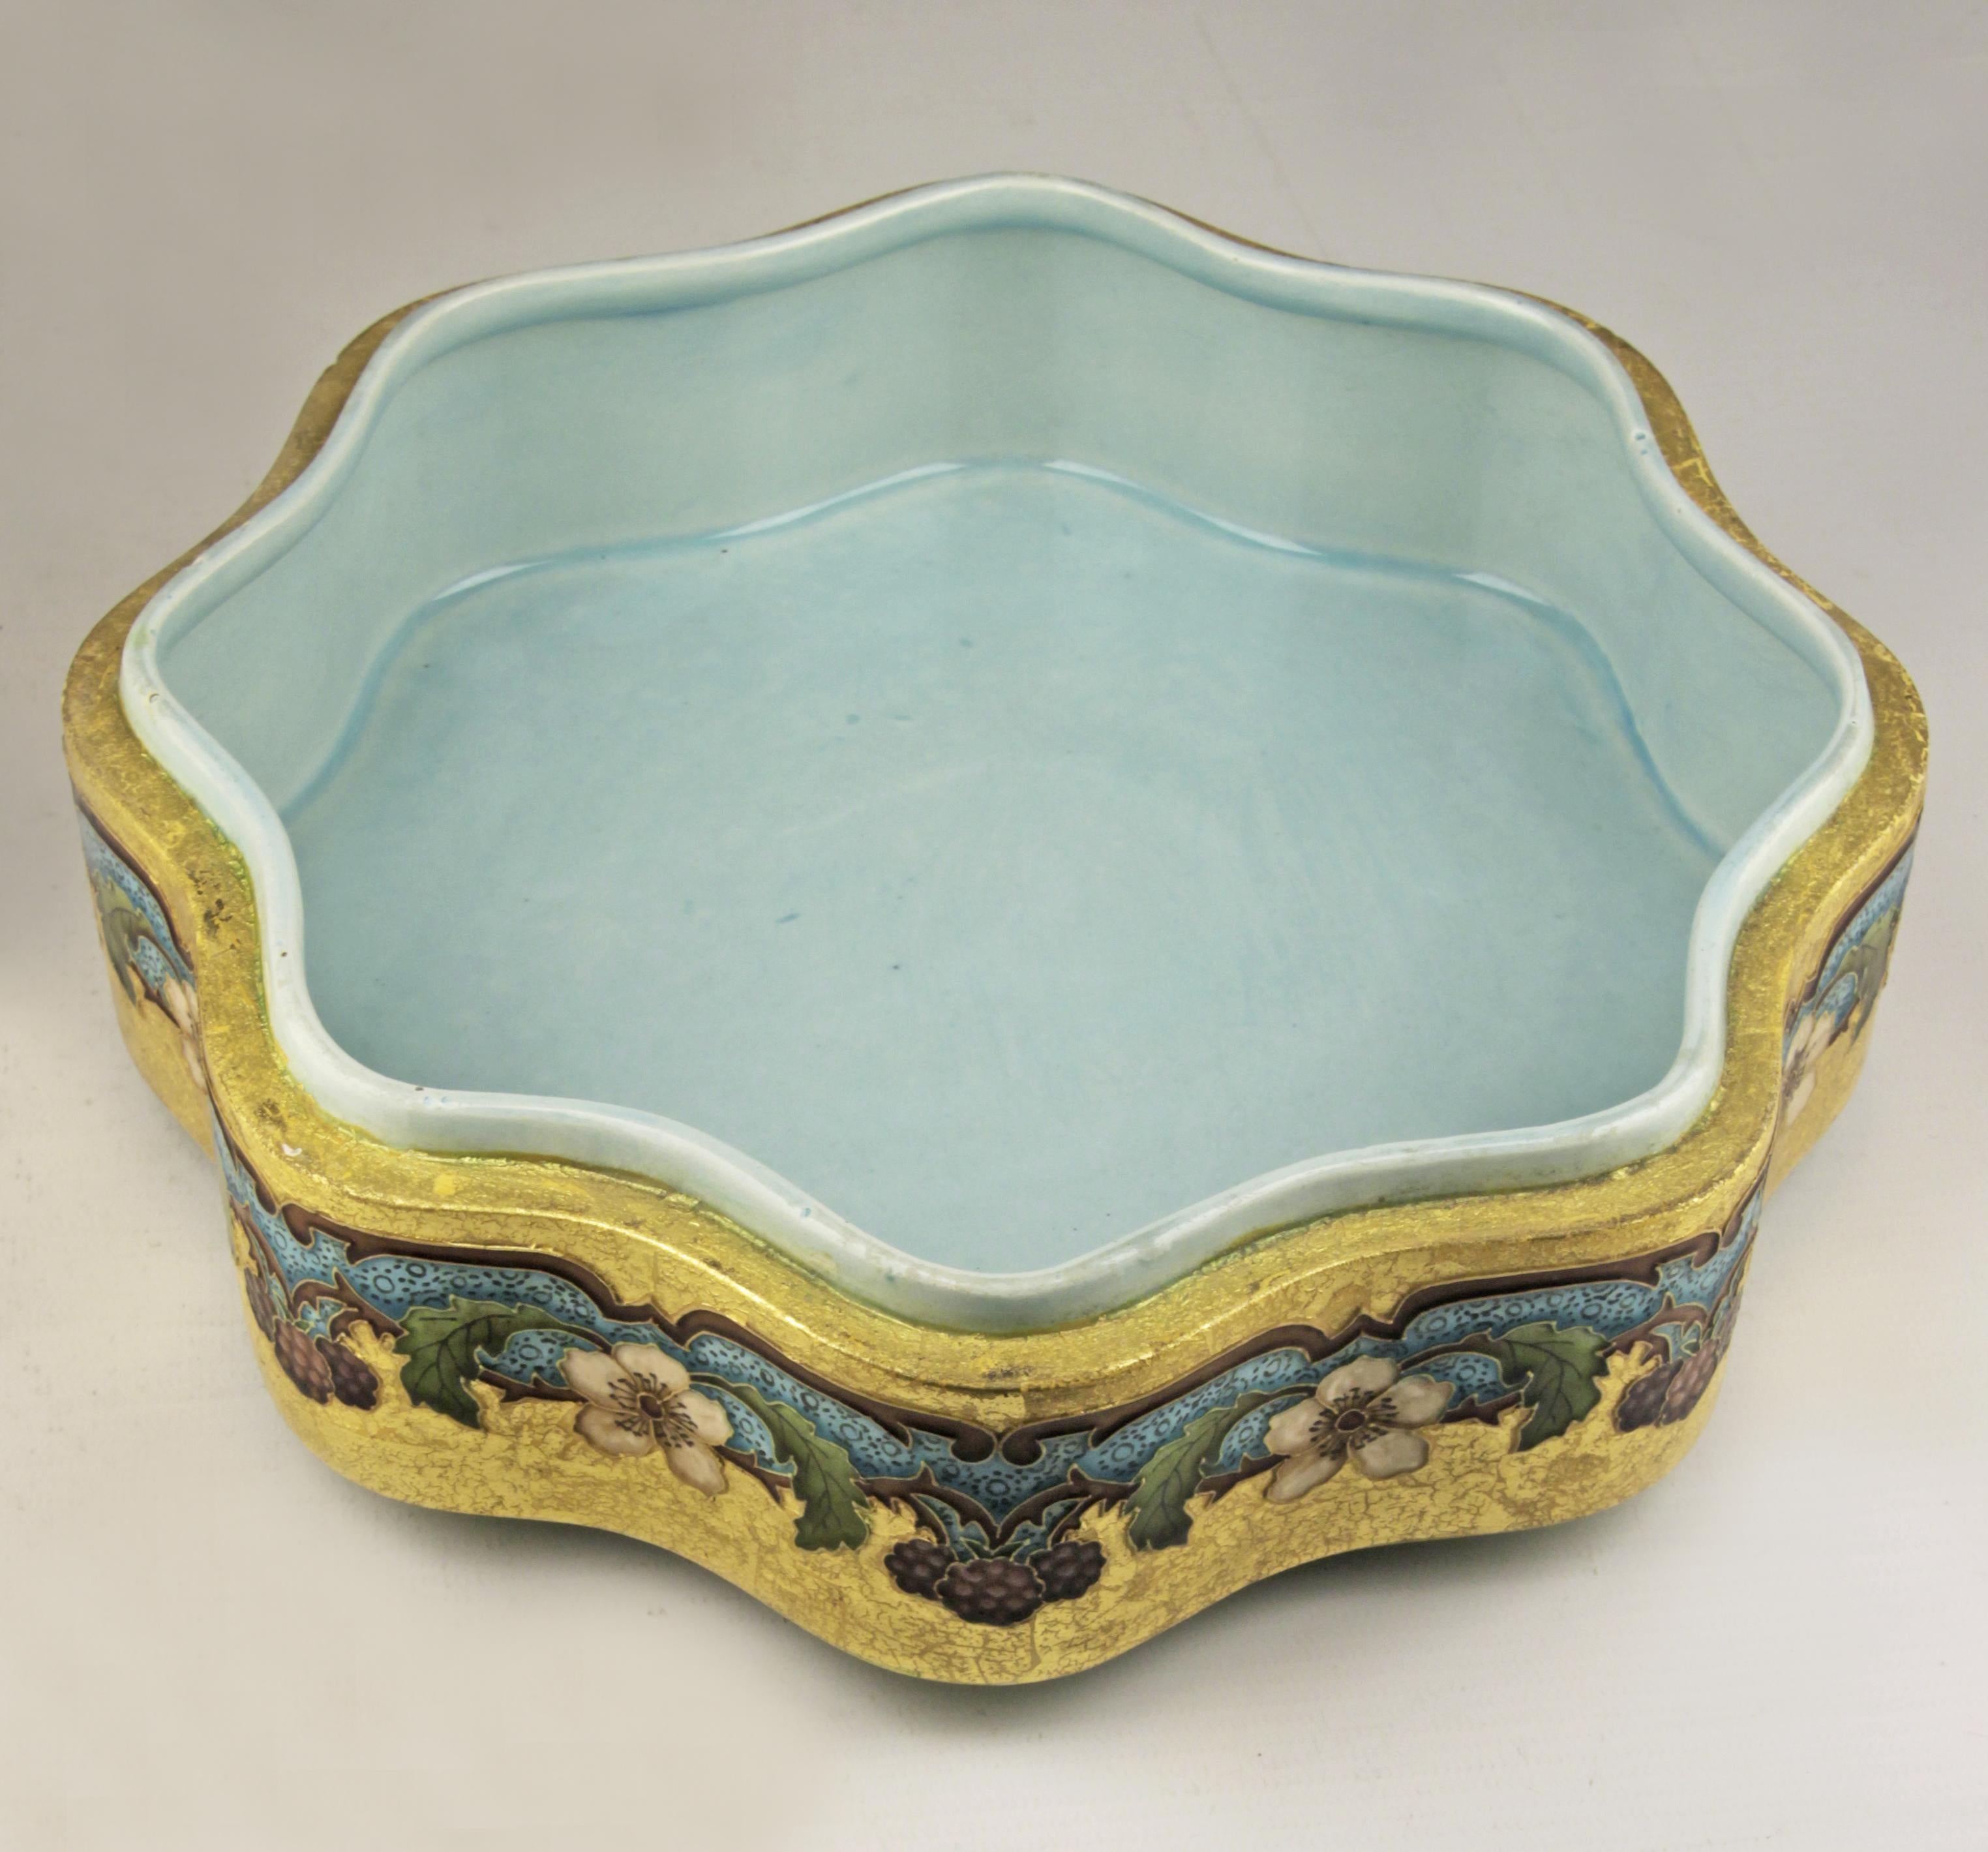 19th Century Art Nouveau Enameled Sèvres Porcelain Bowl and Lid by French Ceramist Paul Milet